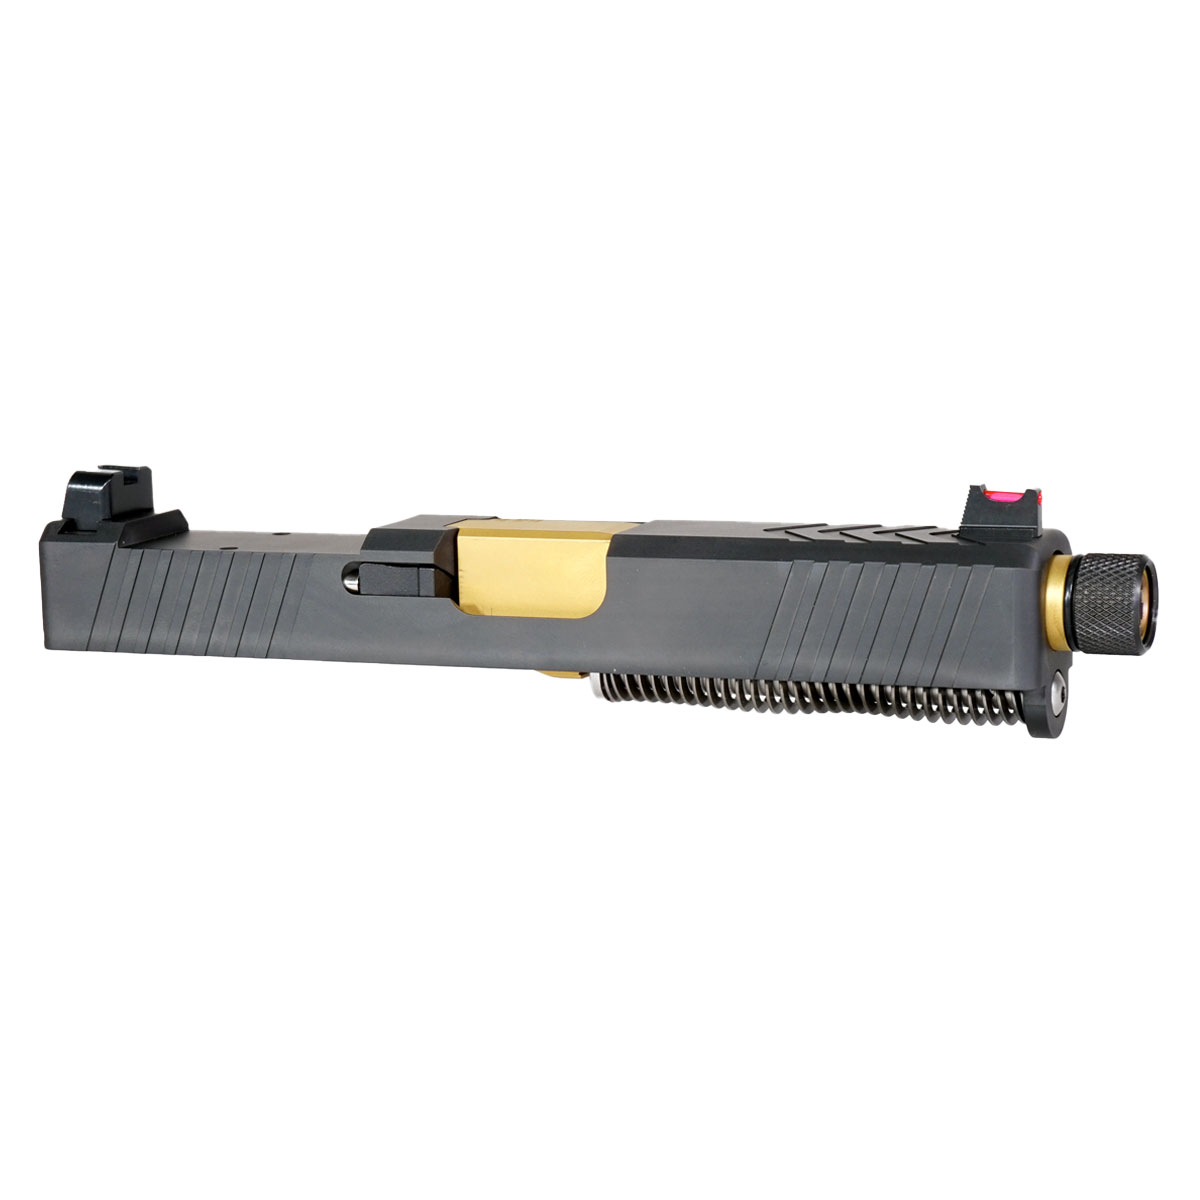 OTD 'Backmarker' 9mm Complete Slide Kit - Glock 19 Gen 1-3 Compatible